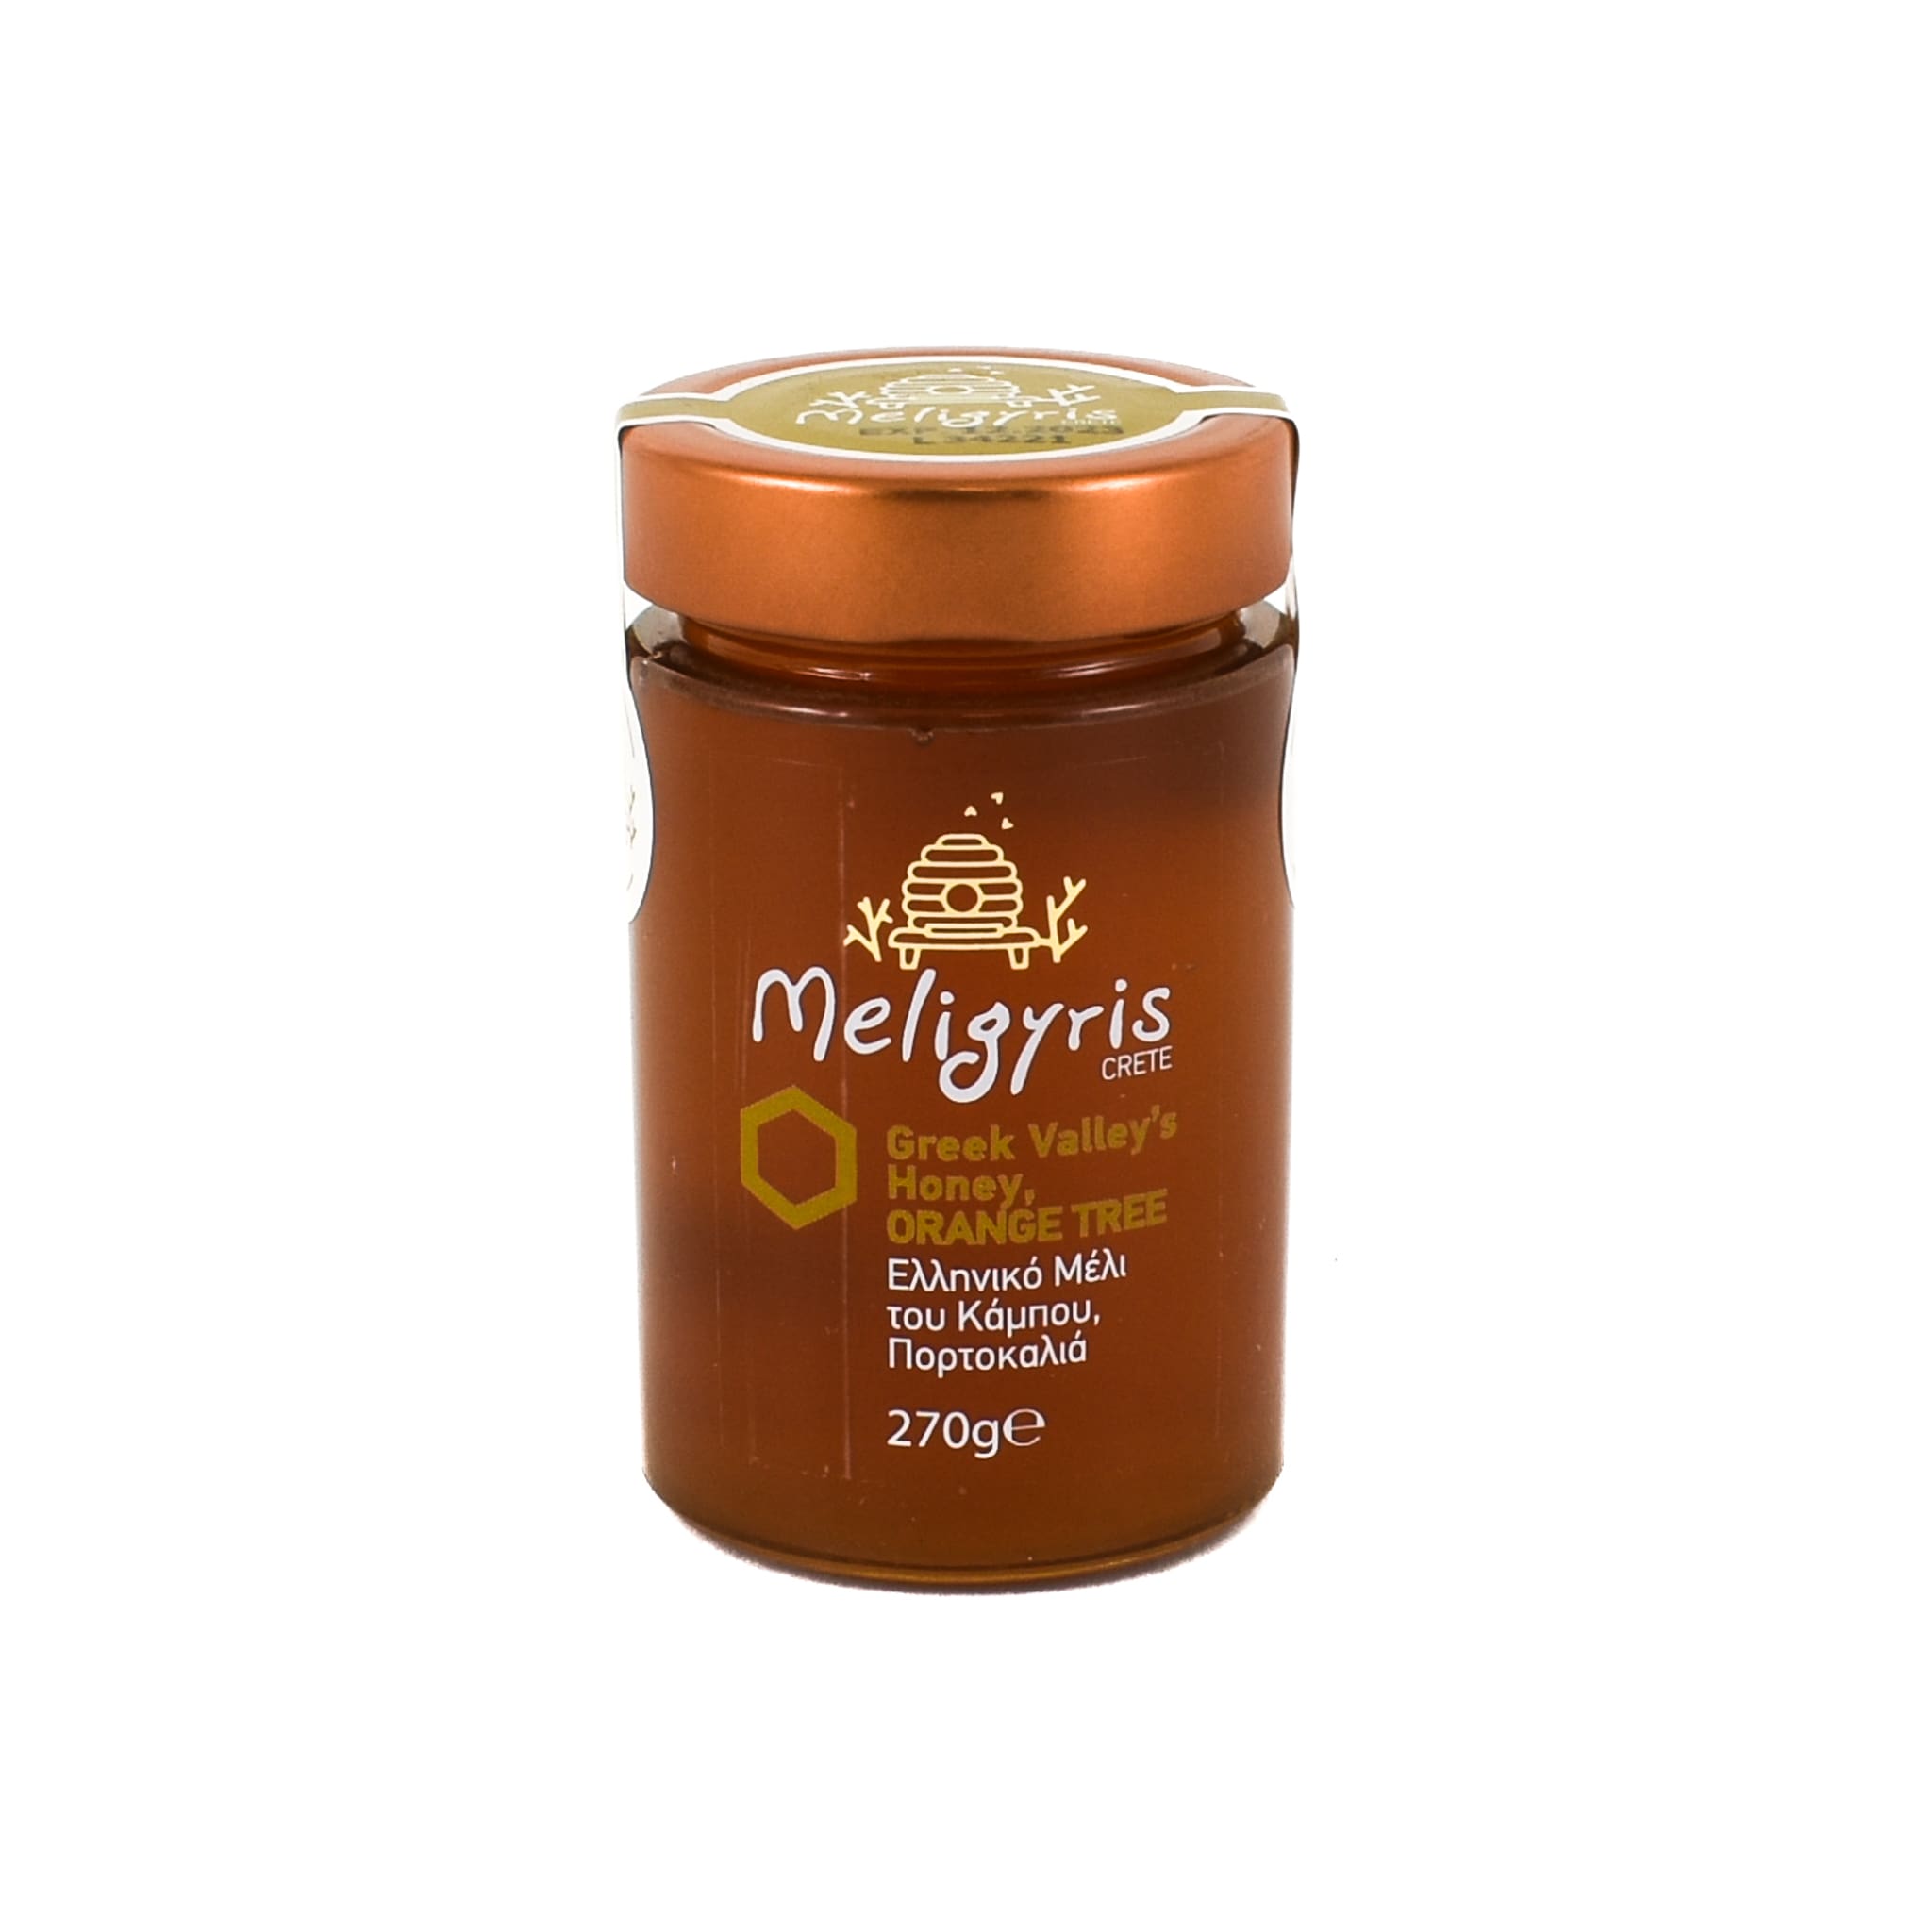 Meligyris Orange Blossom Honey 270g